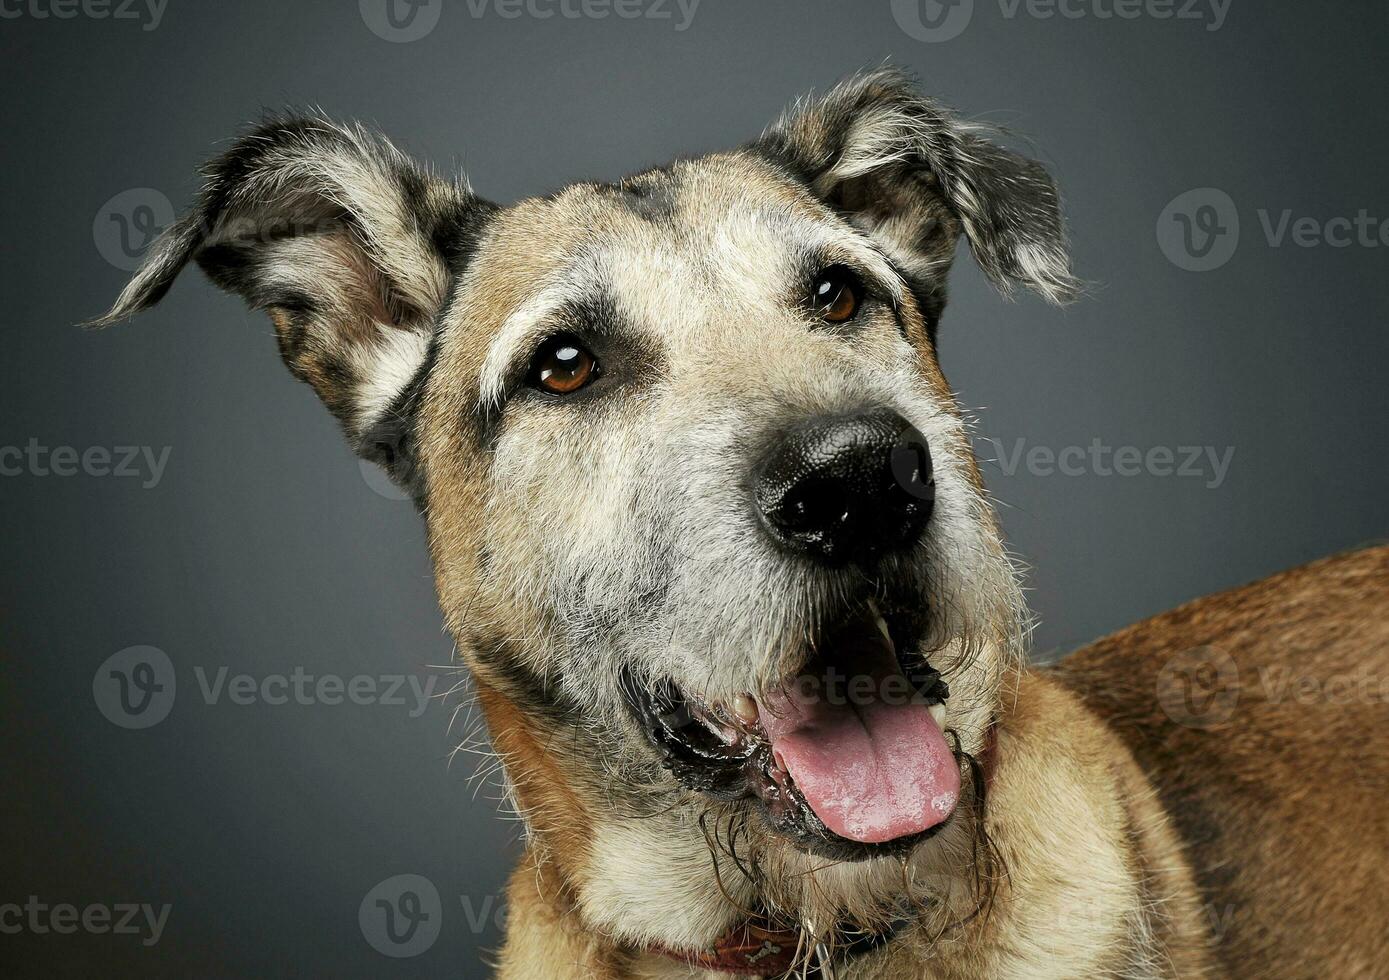 retrato de un adorable mezclado raza perro mirando satisfecho foto